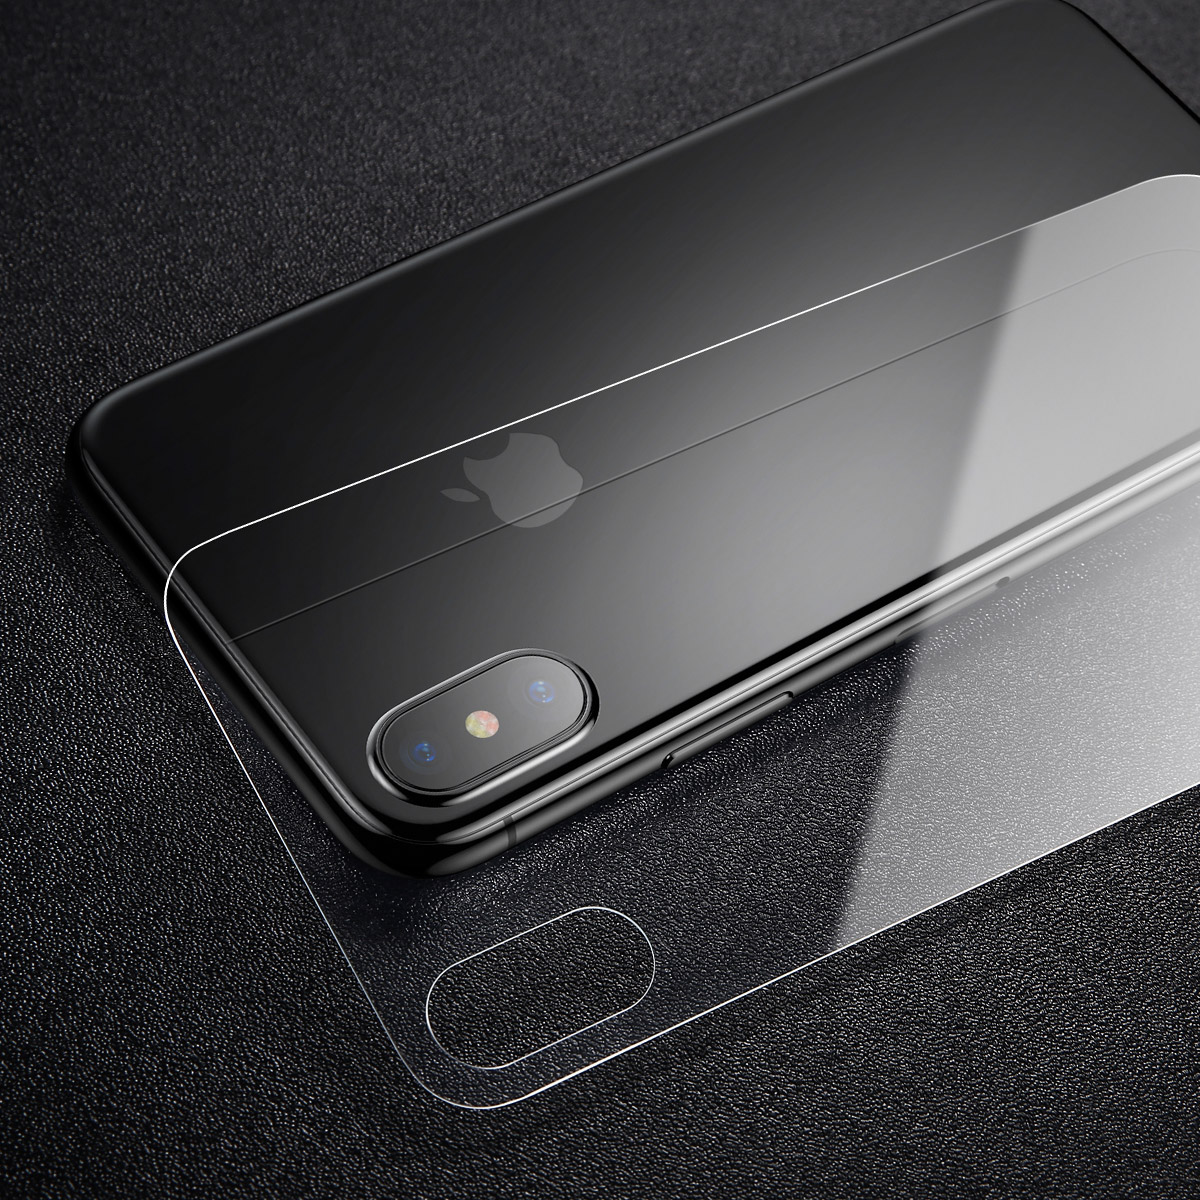 Комплект защитных стекол Baseus Glass Film Set для iPhone Xs Max Transparent